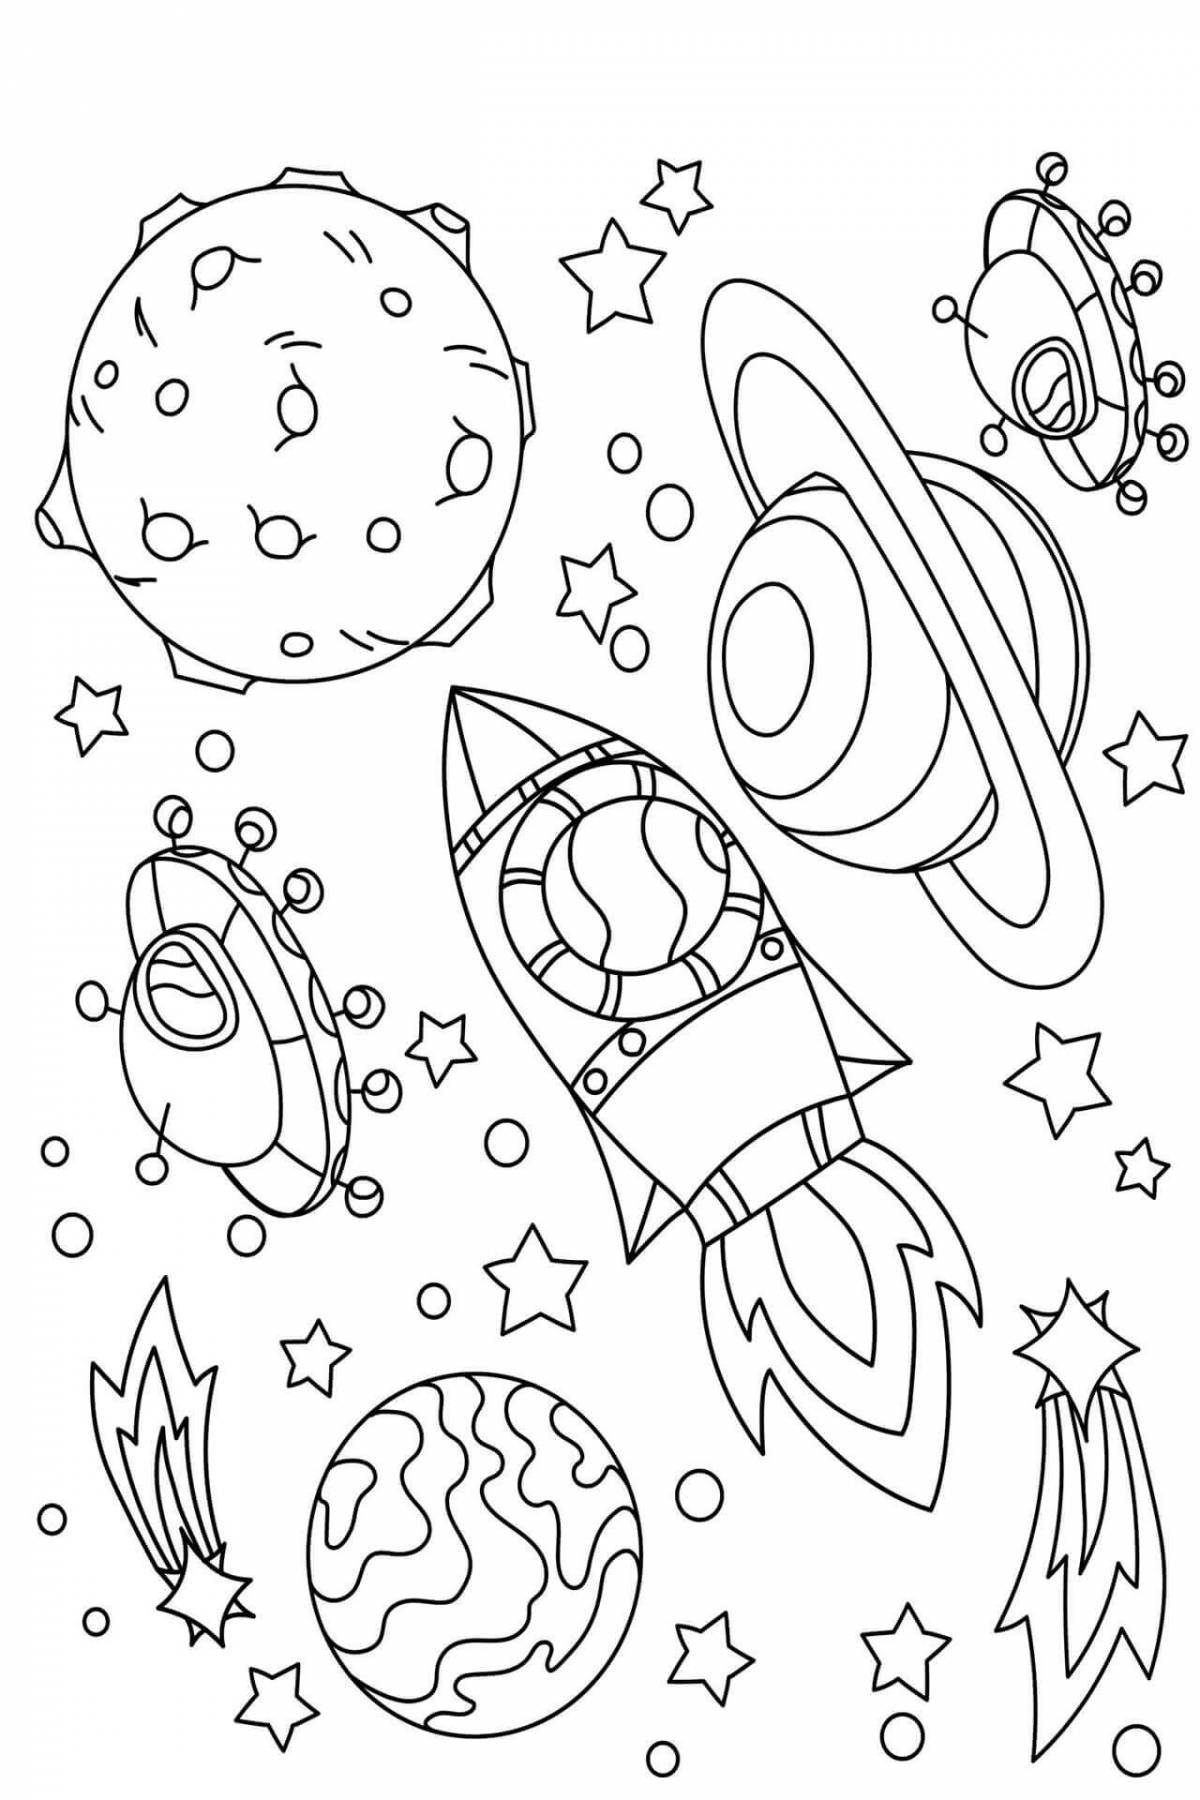 Раскраска космос для детей 3 лет. Космос раскраска для детей. Раскраска космос для детей 6-7 лет. Раскраска. В космосе. Раскраски космос для детей 4-5 лет.